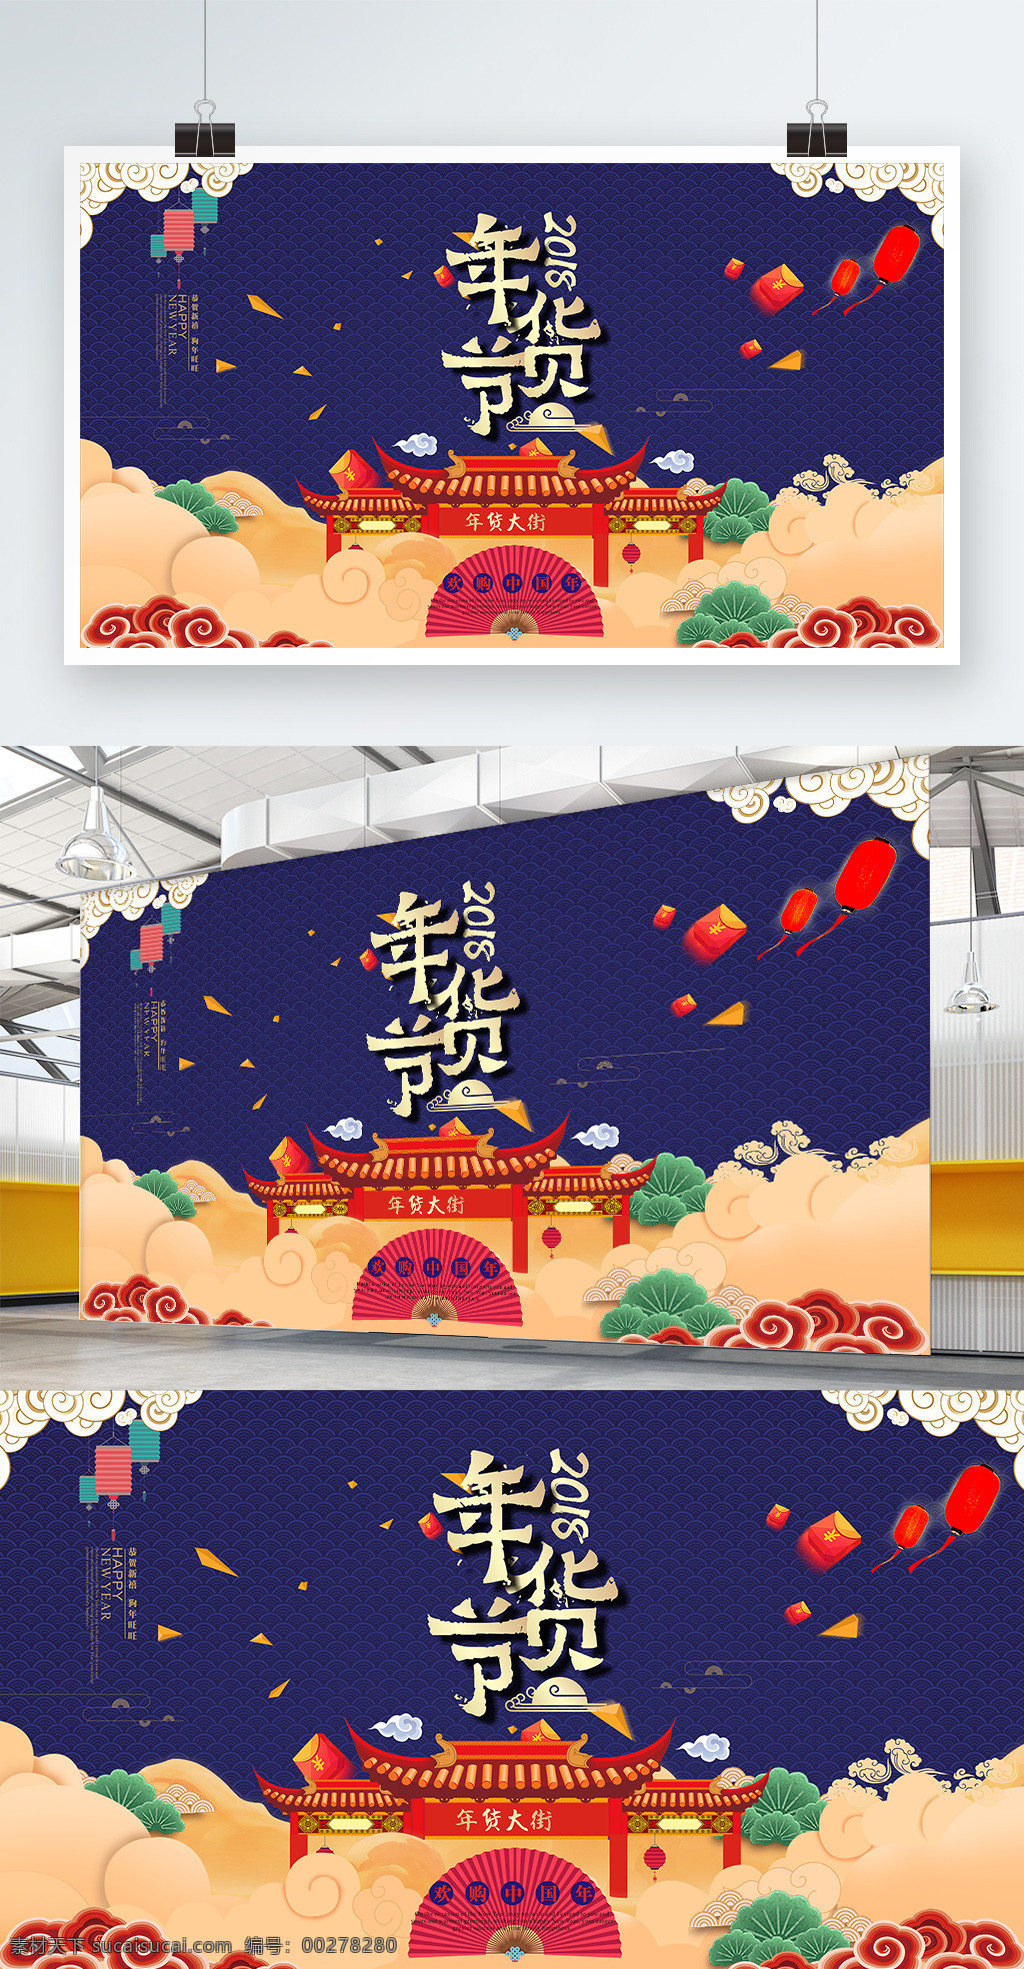 2018 年货 节 喜庆 模板 背景板 促销 灯笼 海报 跨年大促 门楼 年货节 展架 中国好年货